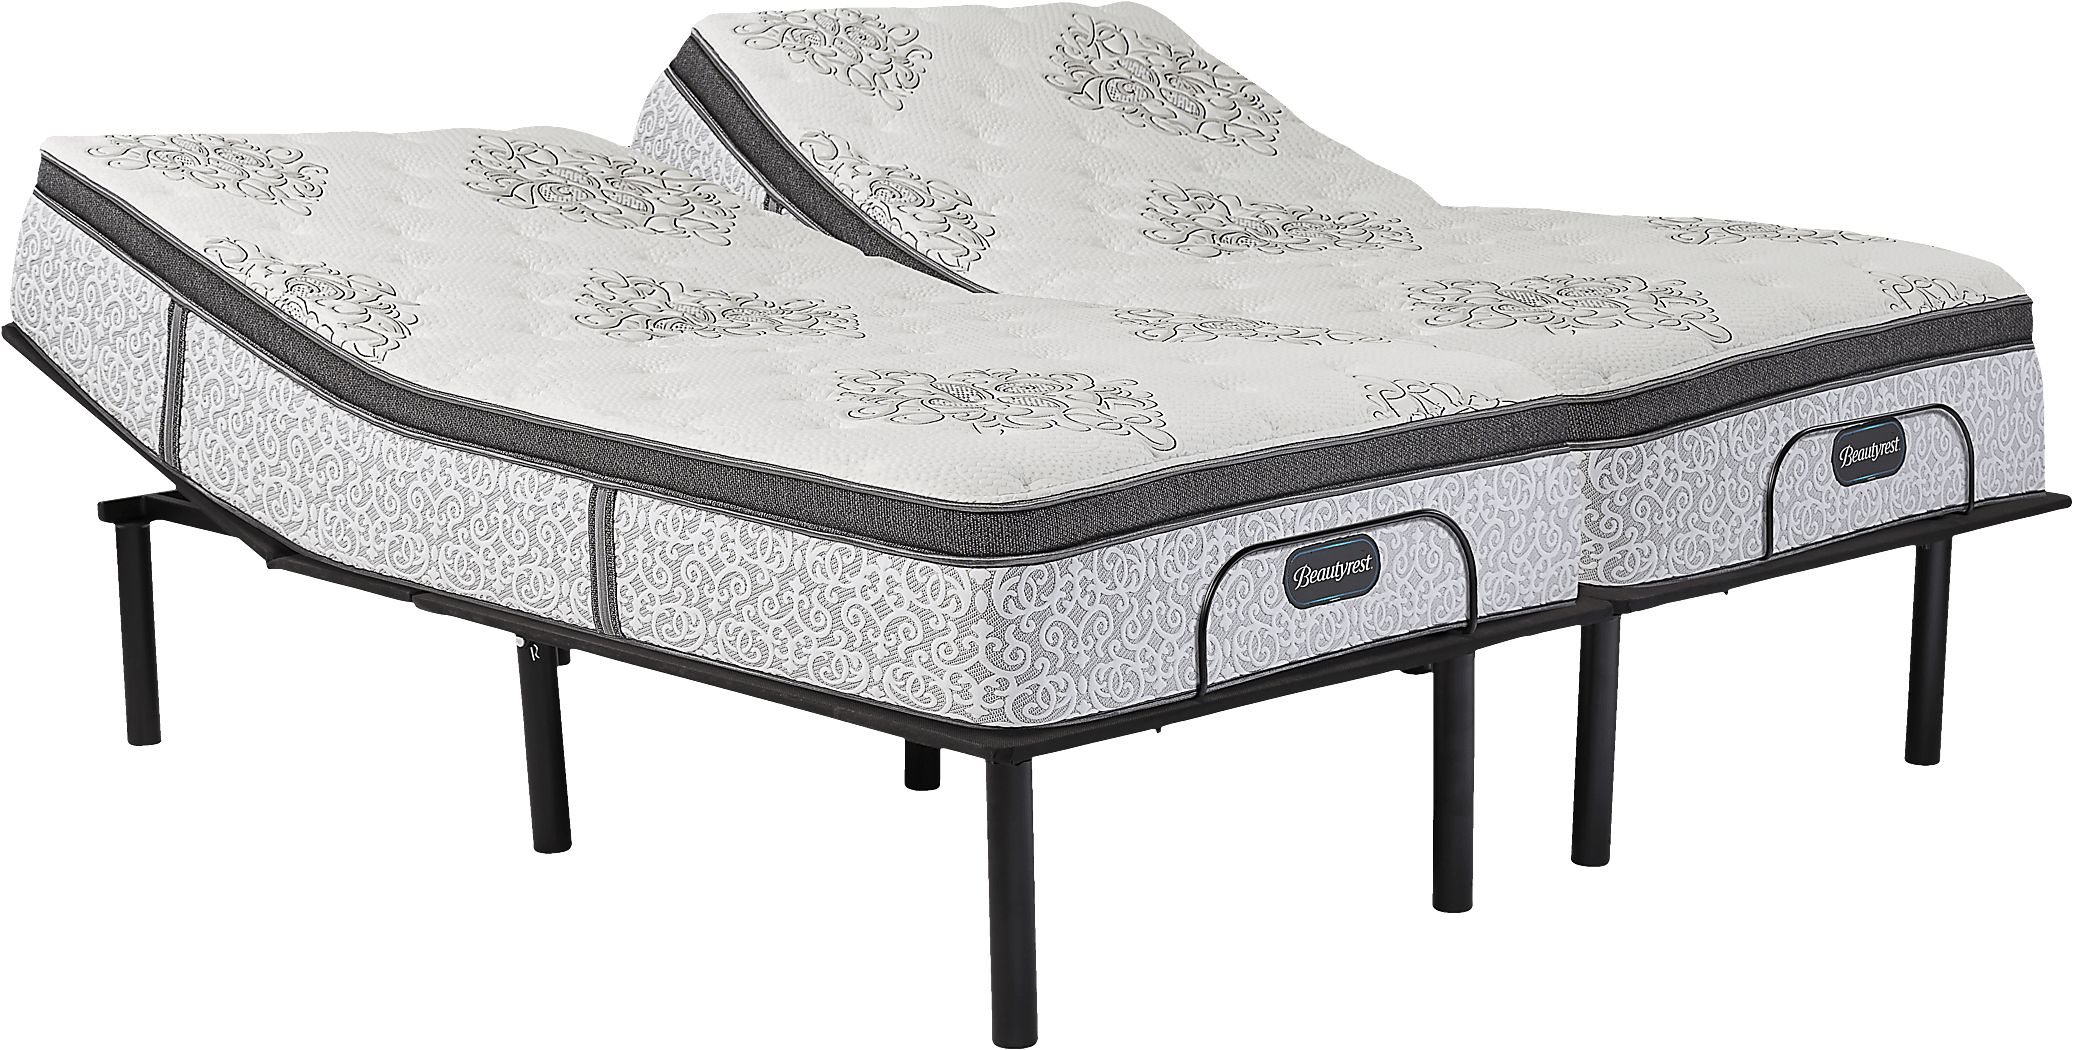 beautyrest legend preston mattress reviews